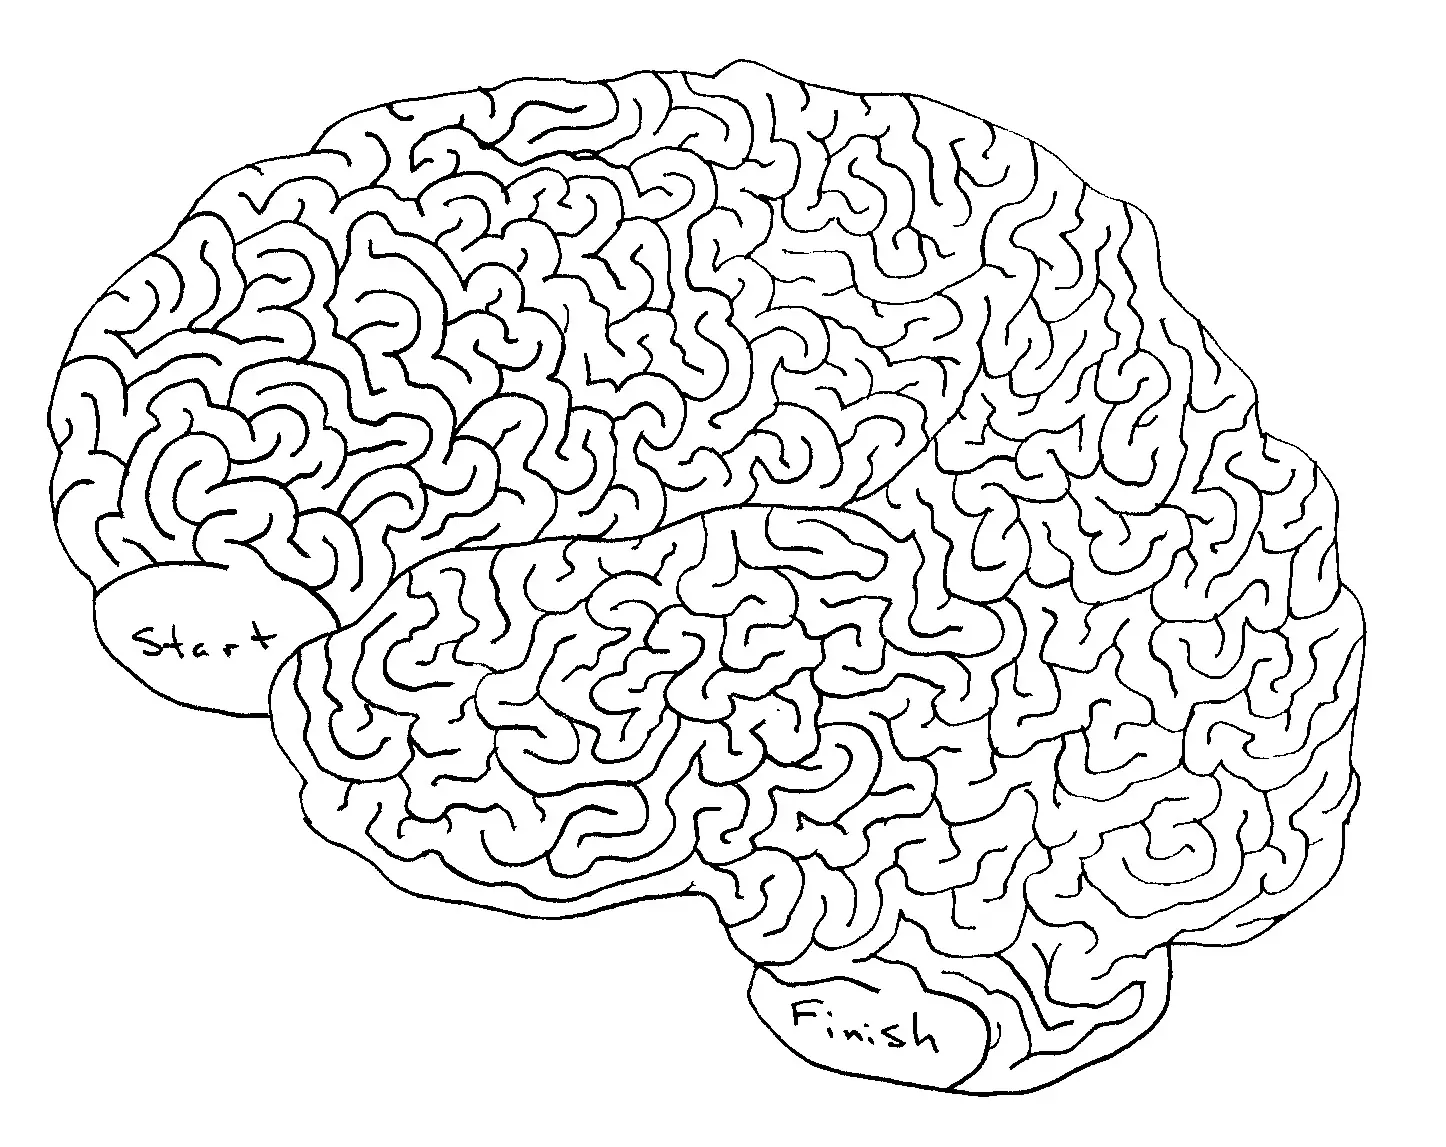 Brain год. Лабиринт сложный. Сложные лабиринты для детей 10-12 лет. Мозг Лабиринт. Слодныелабиринты для детей.